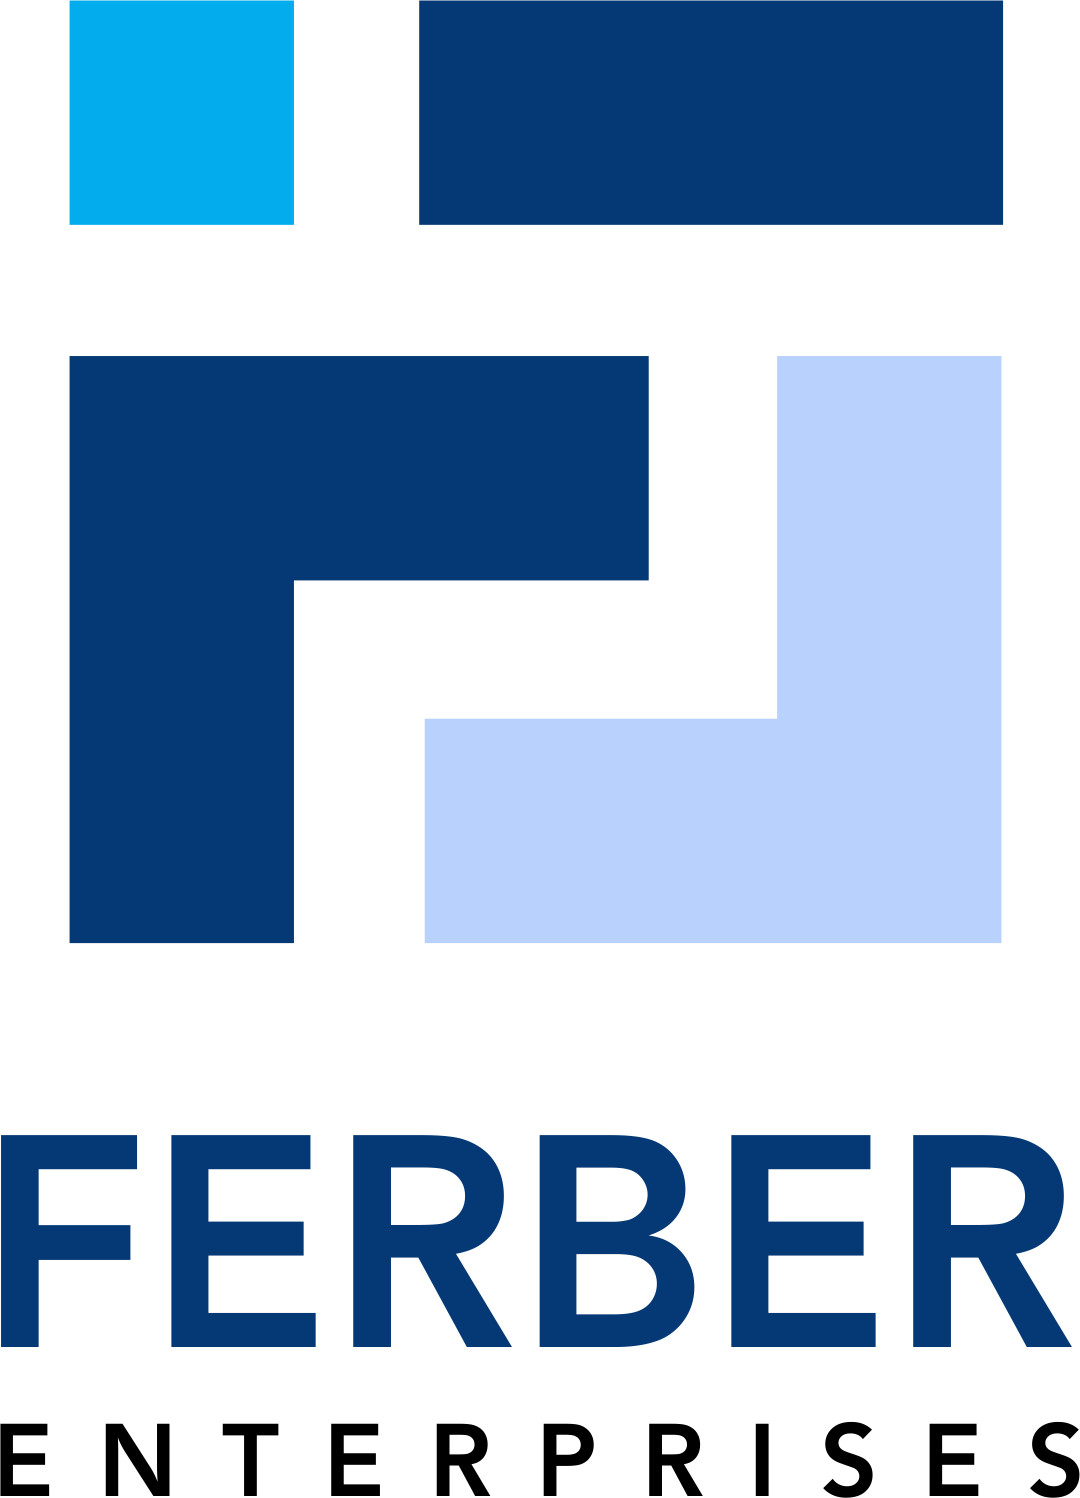 Ferber Enterprises Limited